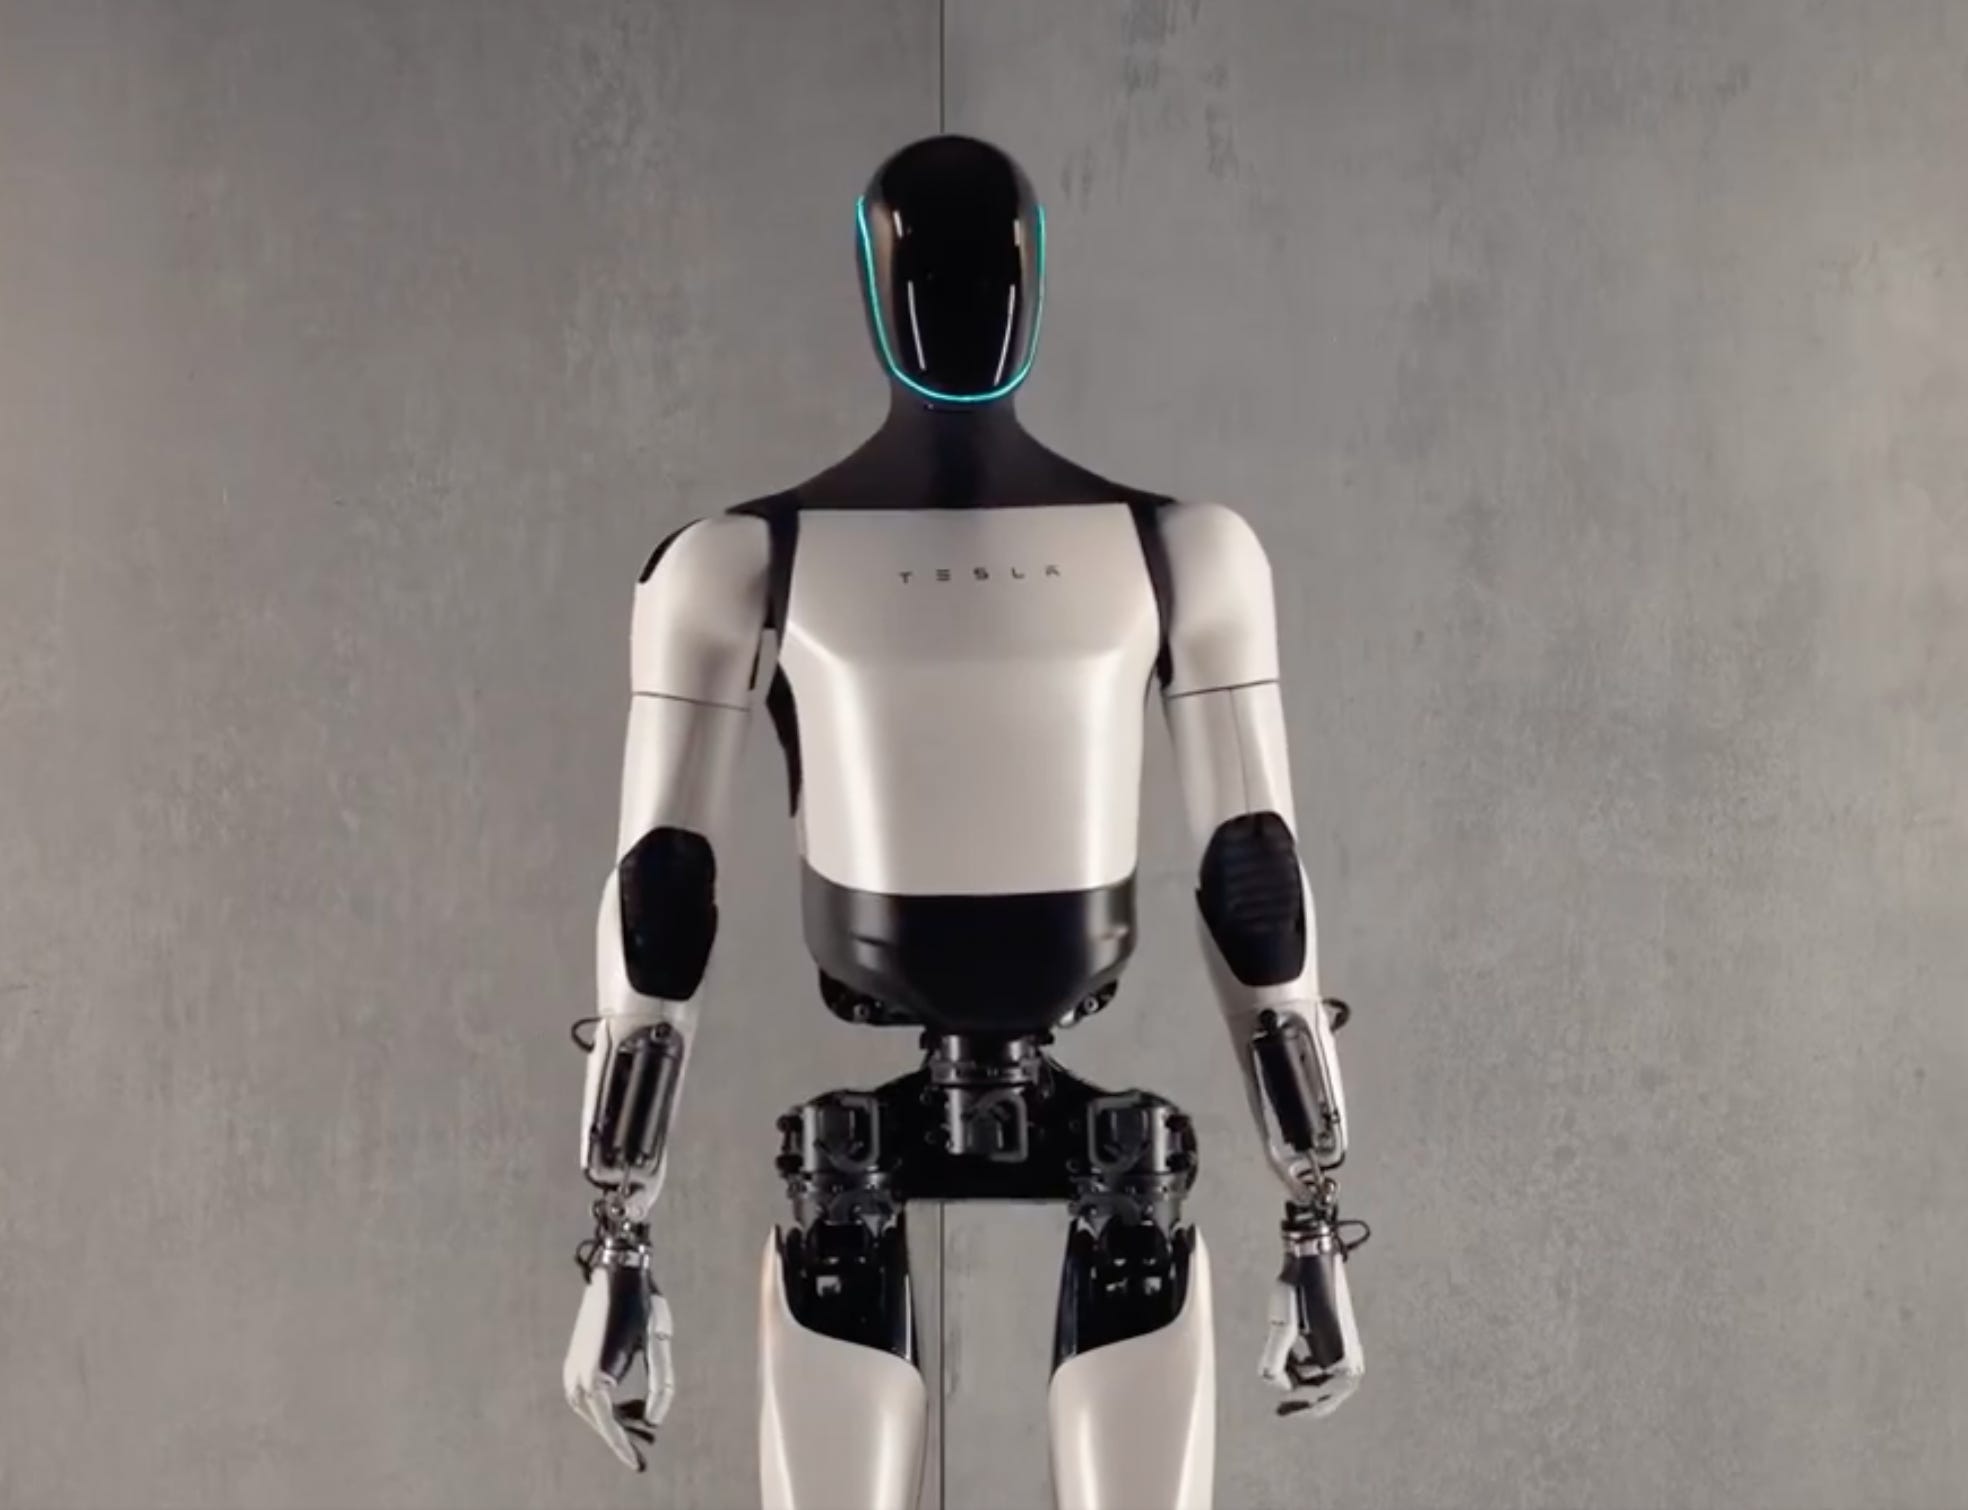 Foto von Teslas humanoidem Roboter namens Optimus.  Es hat weiße Körperteile und einen komplett schwarzen Kopf mit blauem Licht